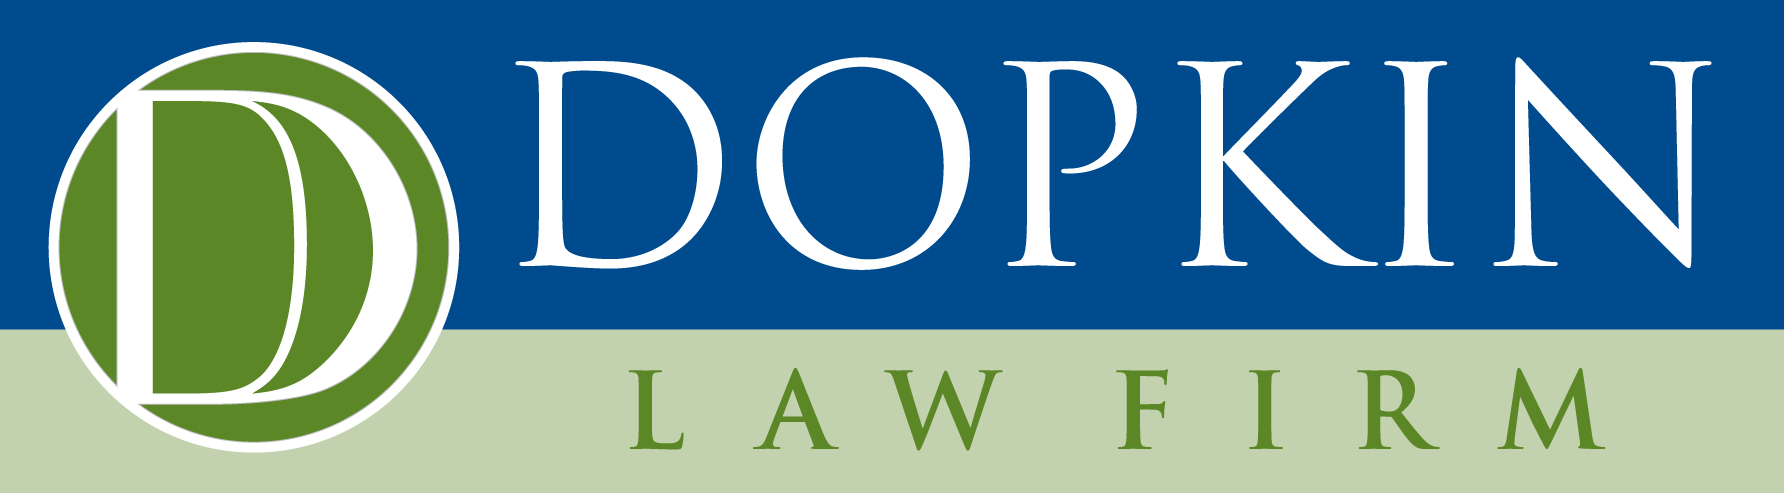 Dopkin Law Firm